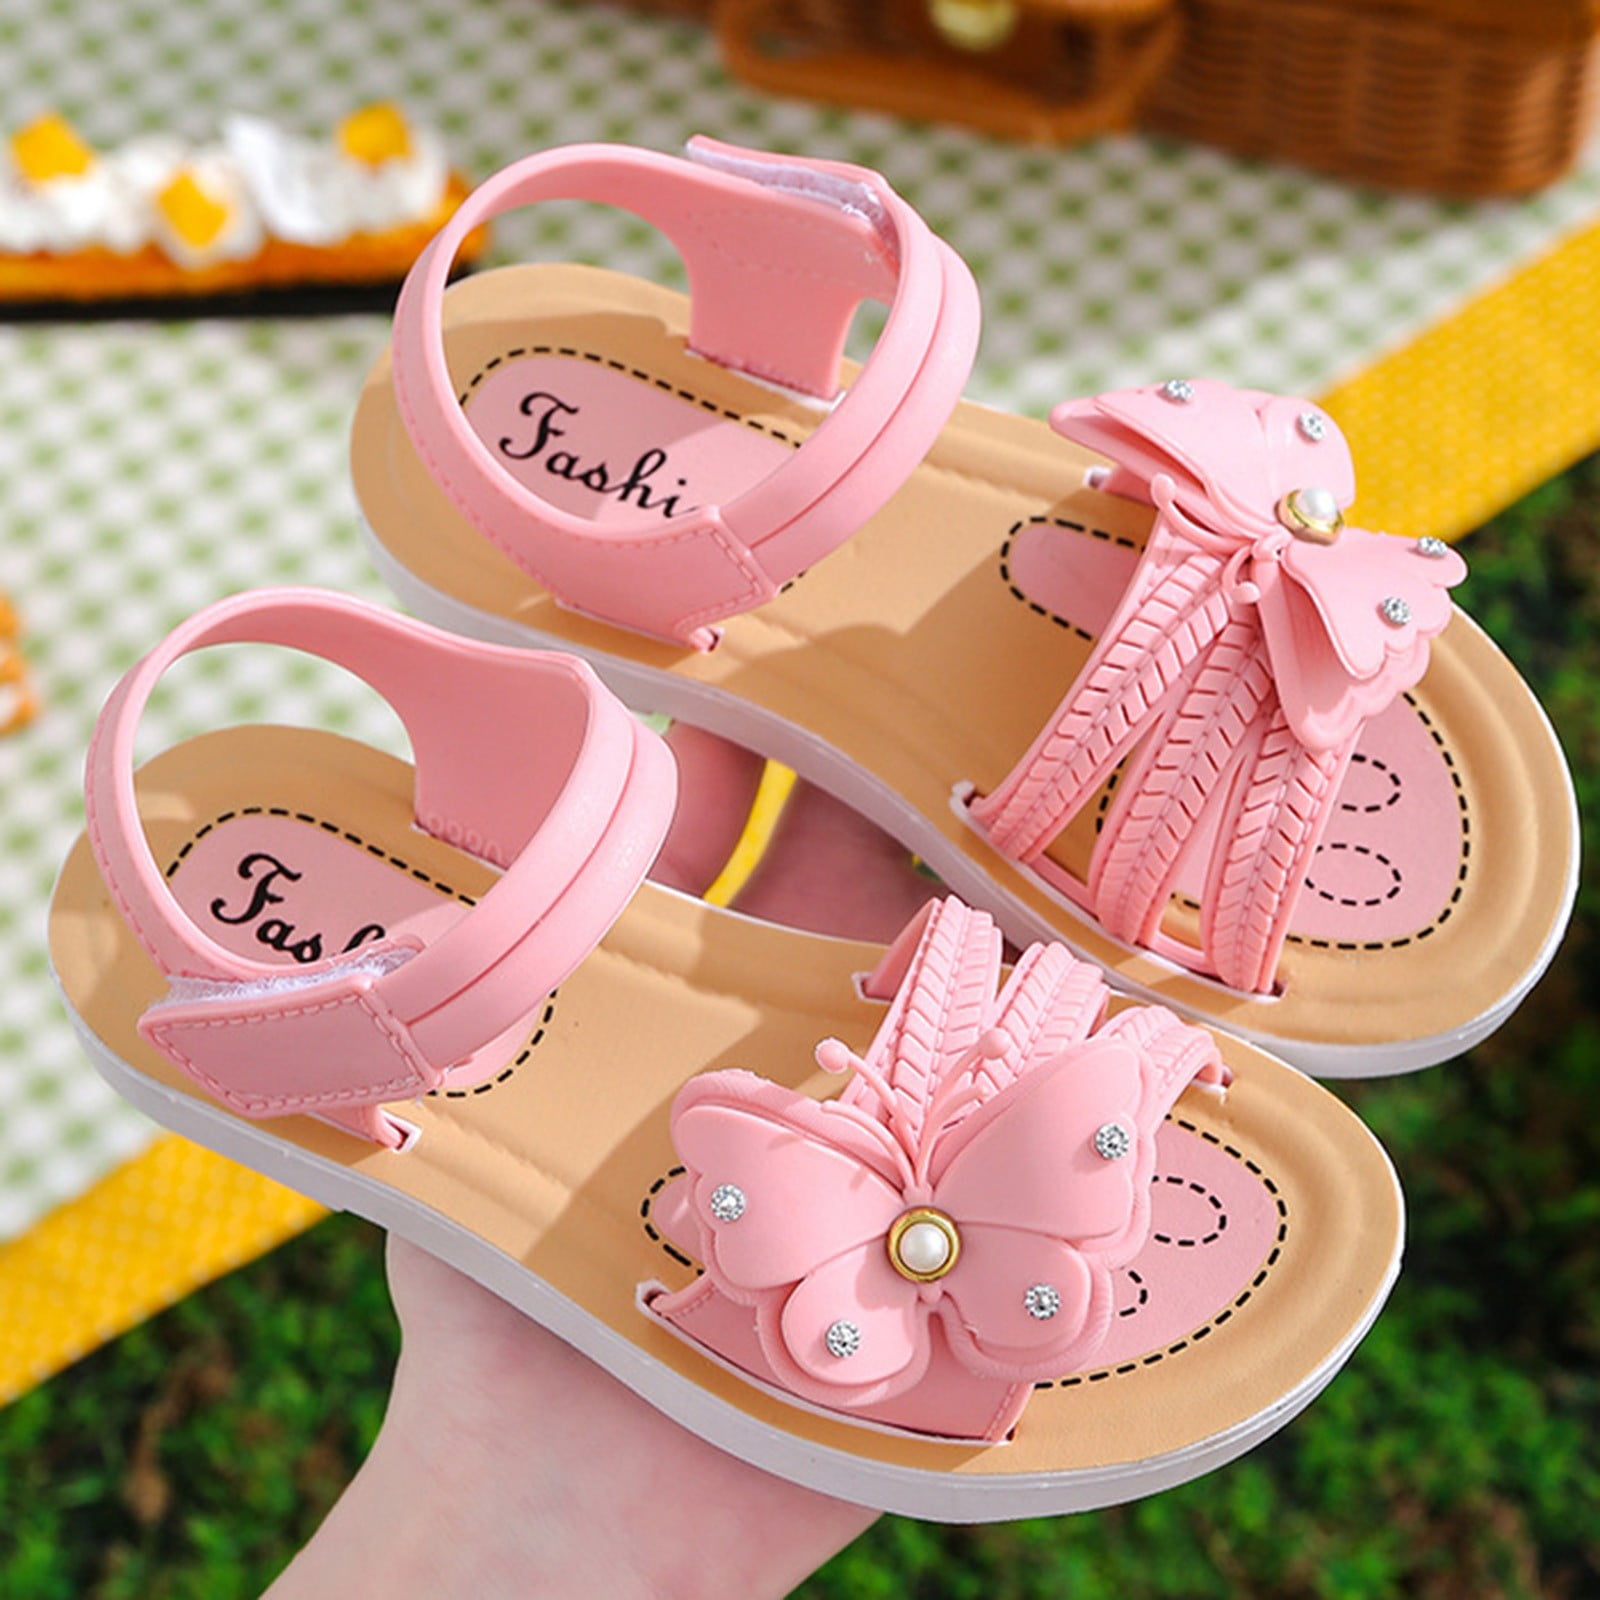 Share 207+ girls slipper shoes